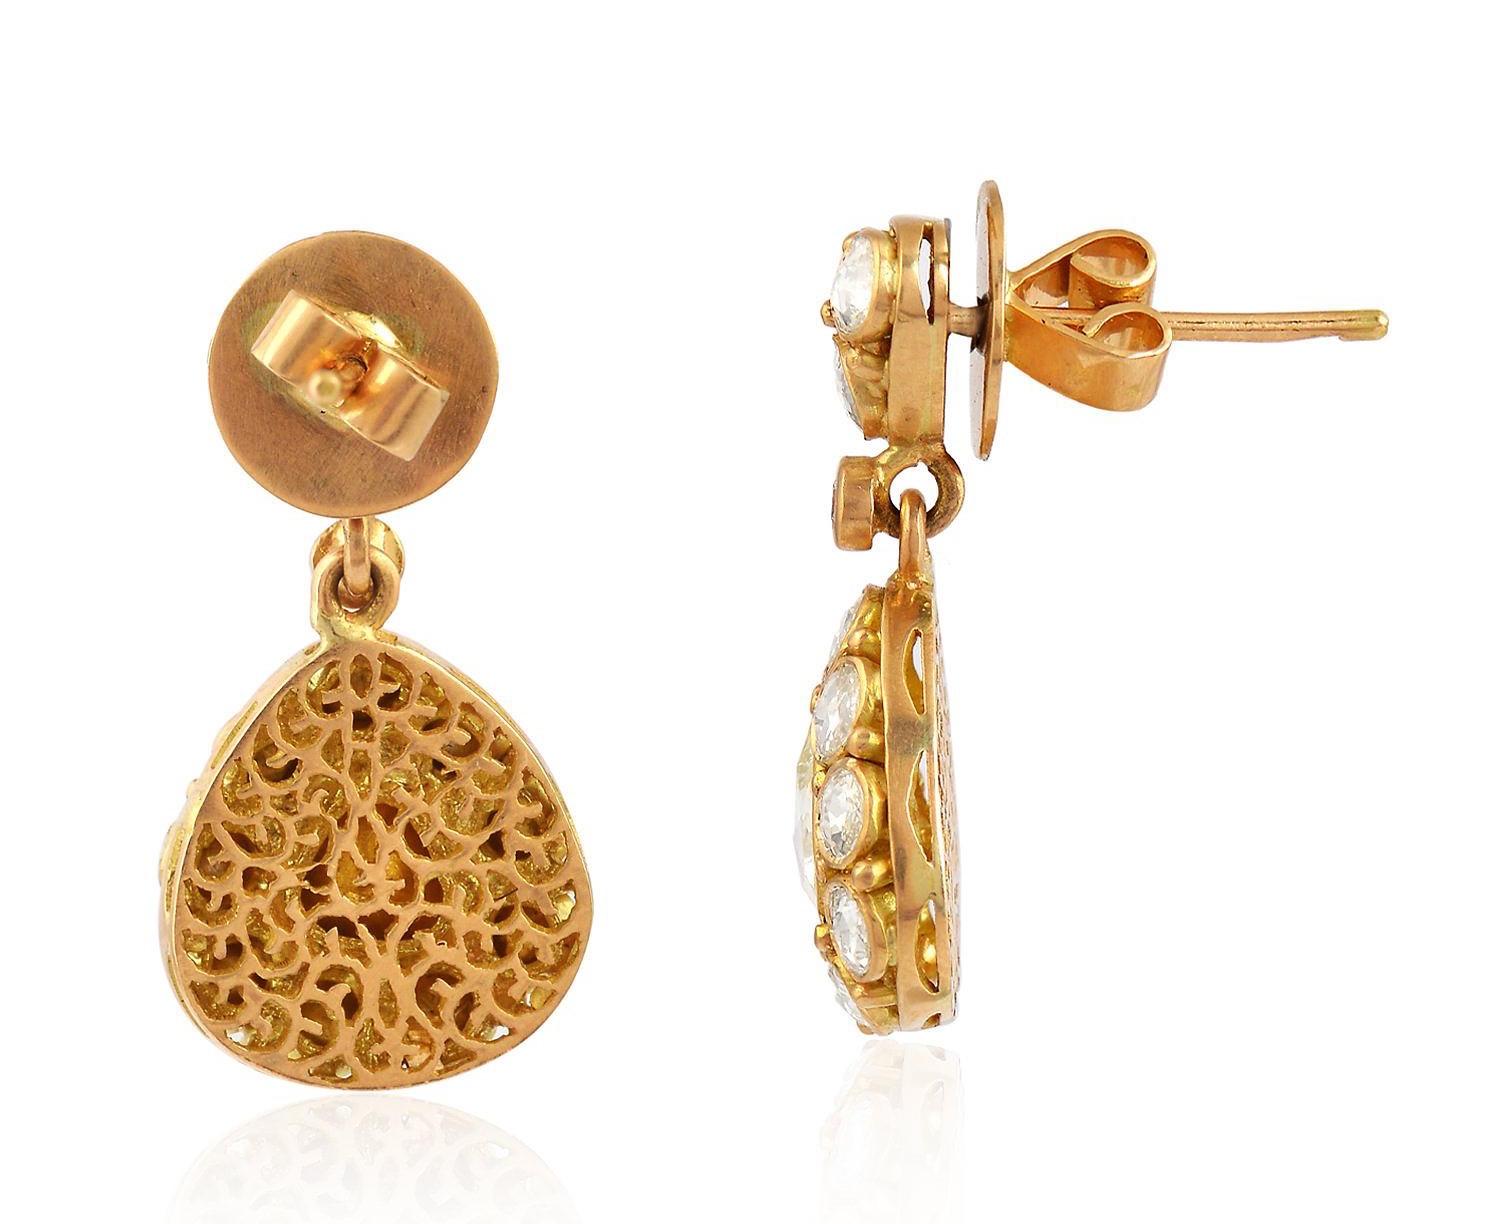 Diese Vintage-inspirierten Ohrringe sind aus 18-karätigem Gelbgold gefertigt und mit 2,13 Karat schimmernden Diamanten im Rosenschliff besetzt

FOLGEN  MEGHNA JEWELS Storefront, um die neueste Kollektion und exklusive Stücke zu sehen.  Meghna Jewels